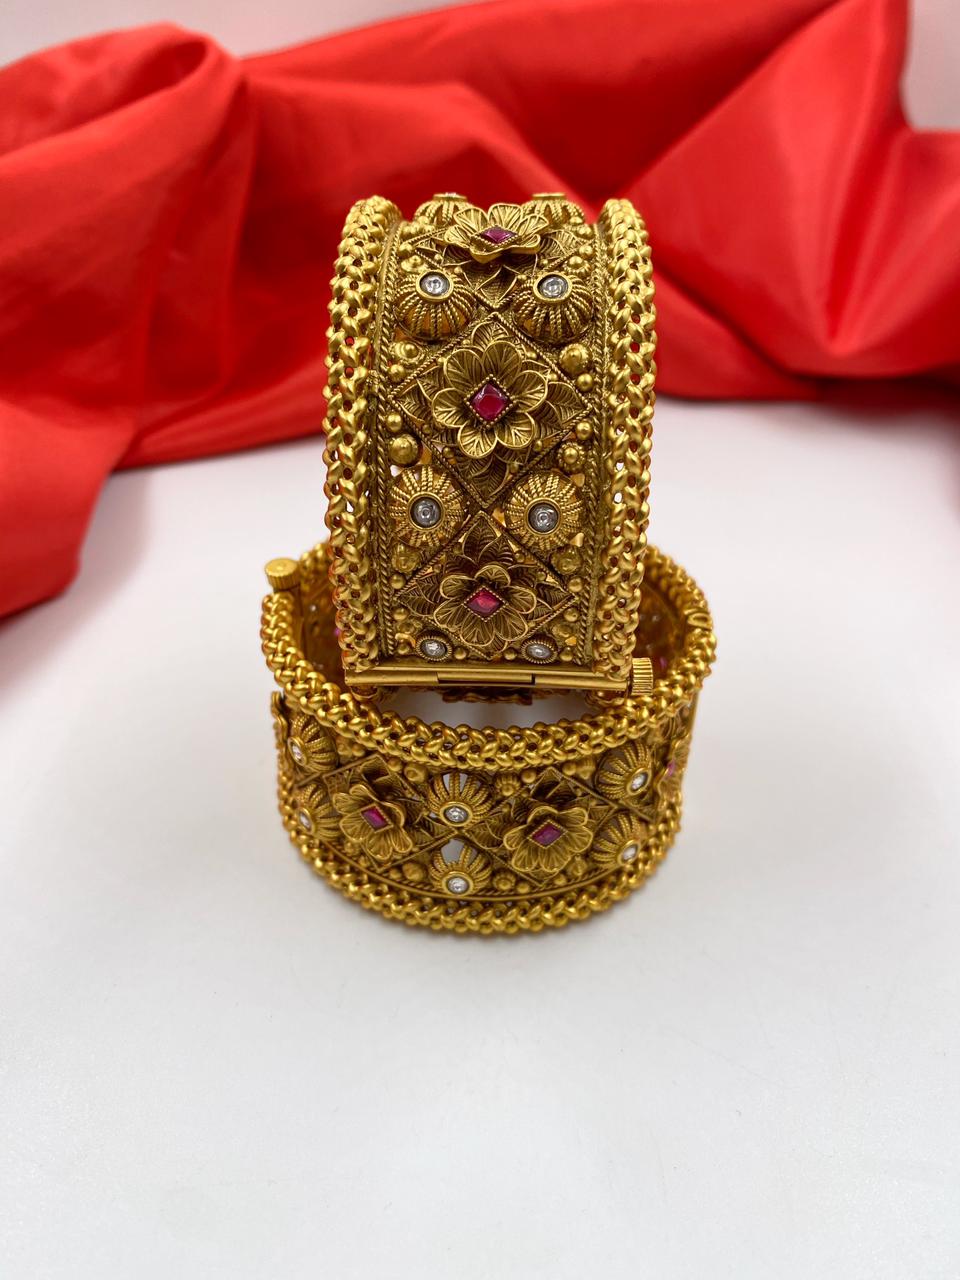 Designer Antique Golden Look Paatla Bangles For Ladies By Gehna Shop Antique Golden Bangles